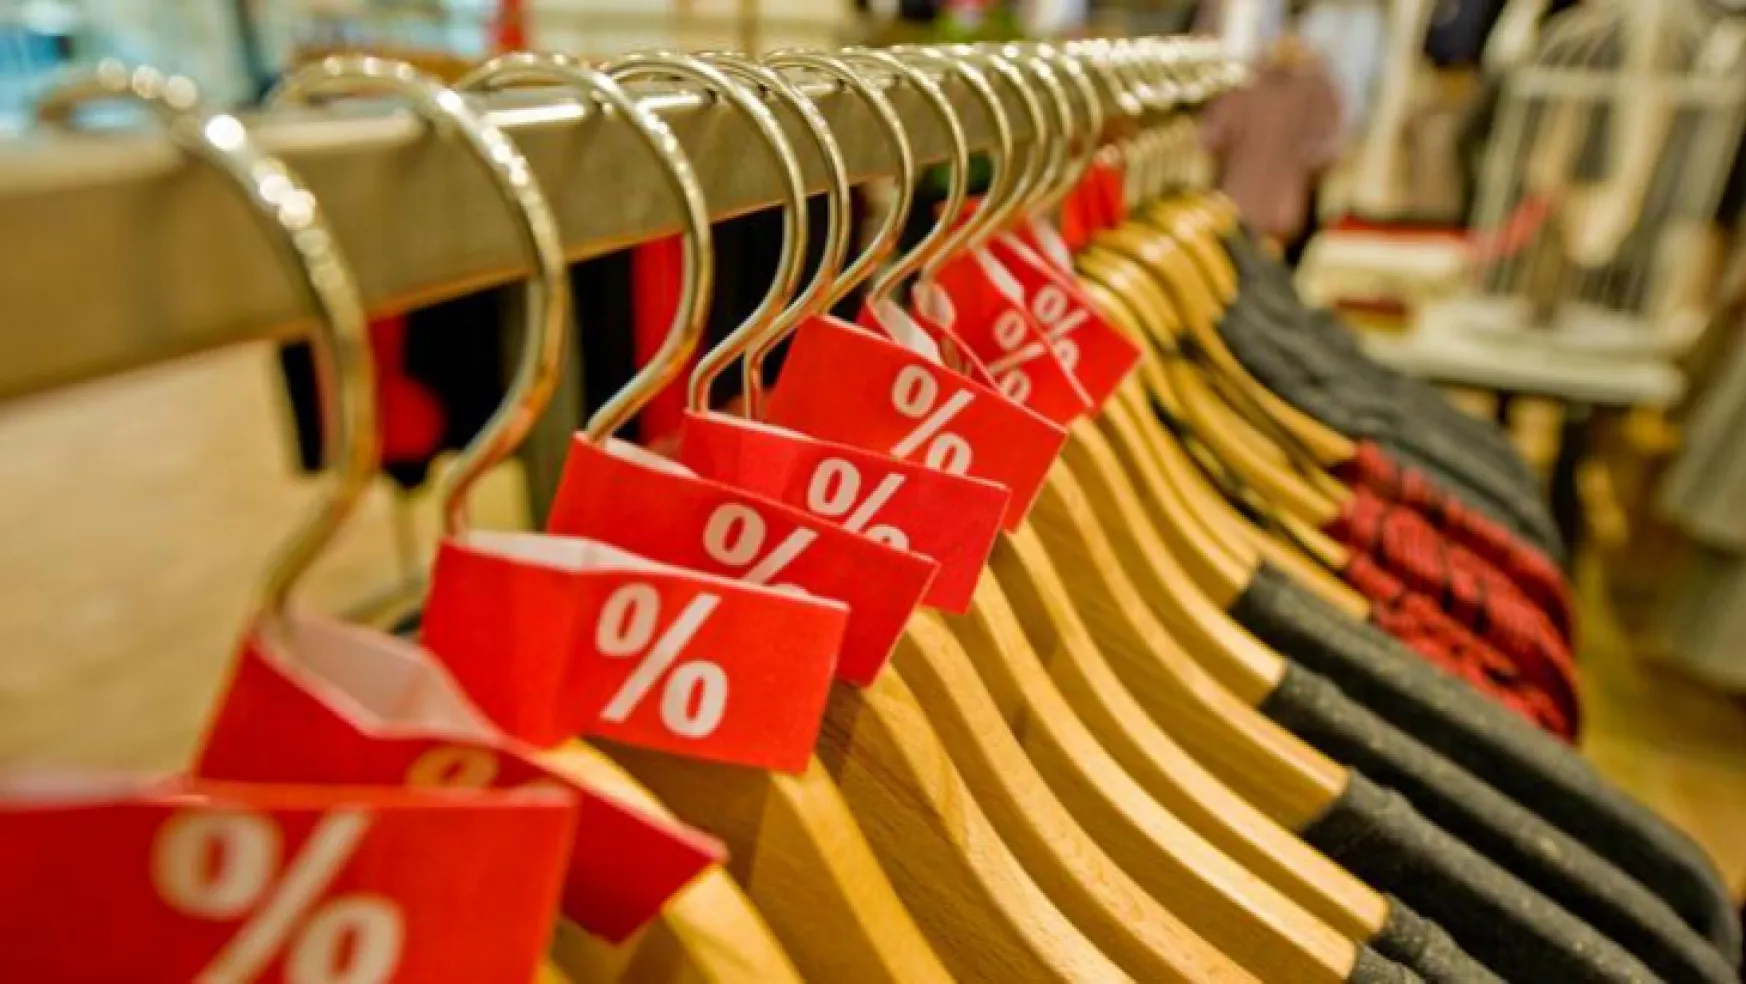 Perakende satış hacmi aylık yüzde 4,8 arttı